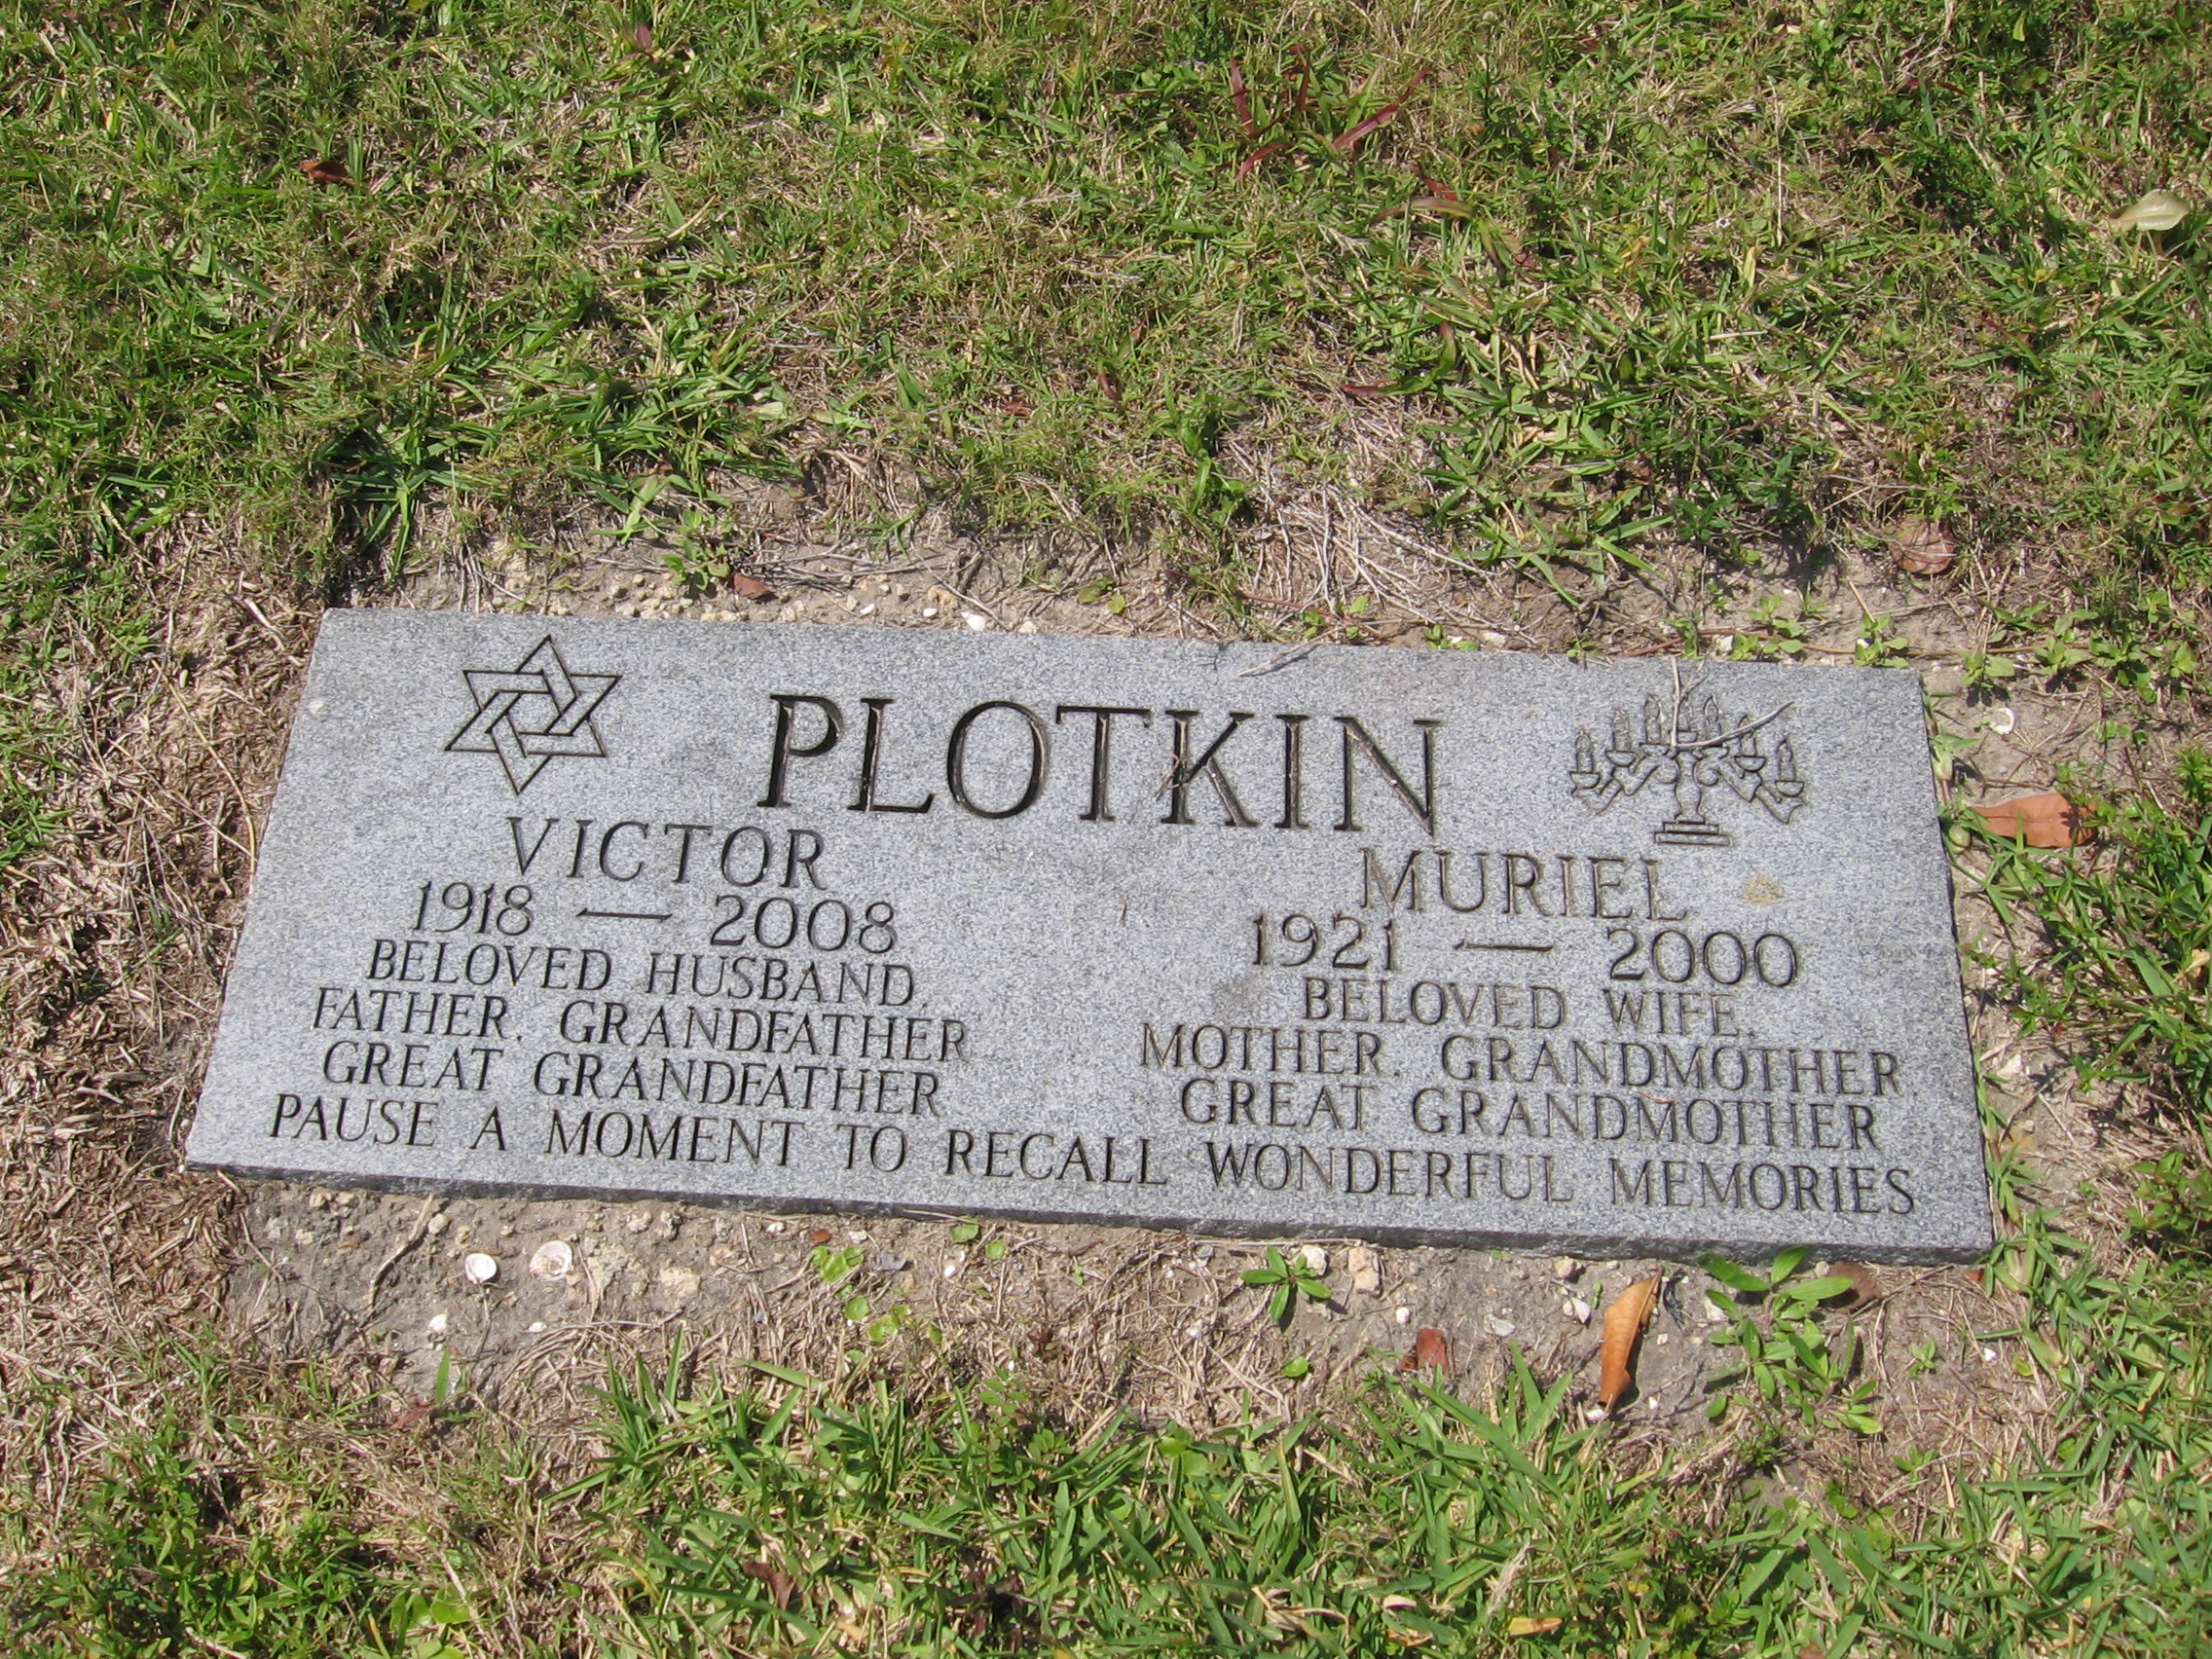 Victor Plotkin